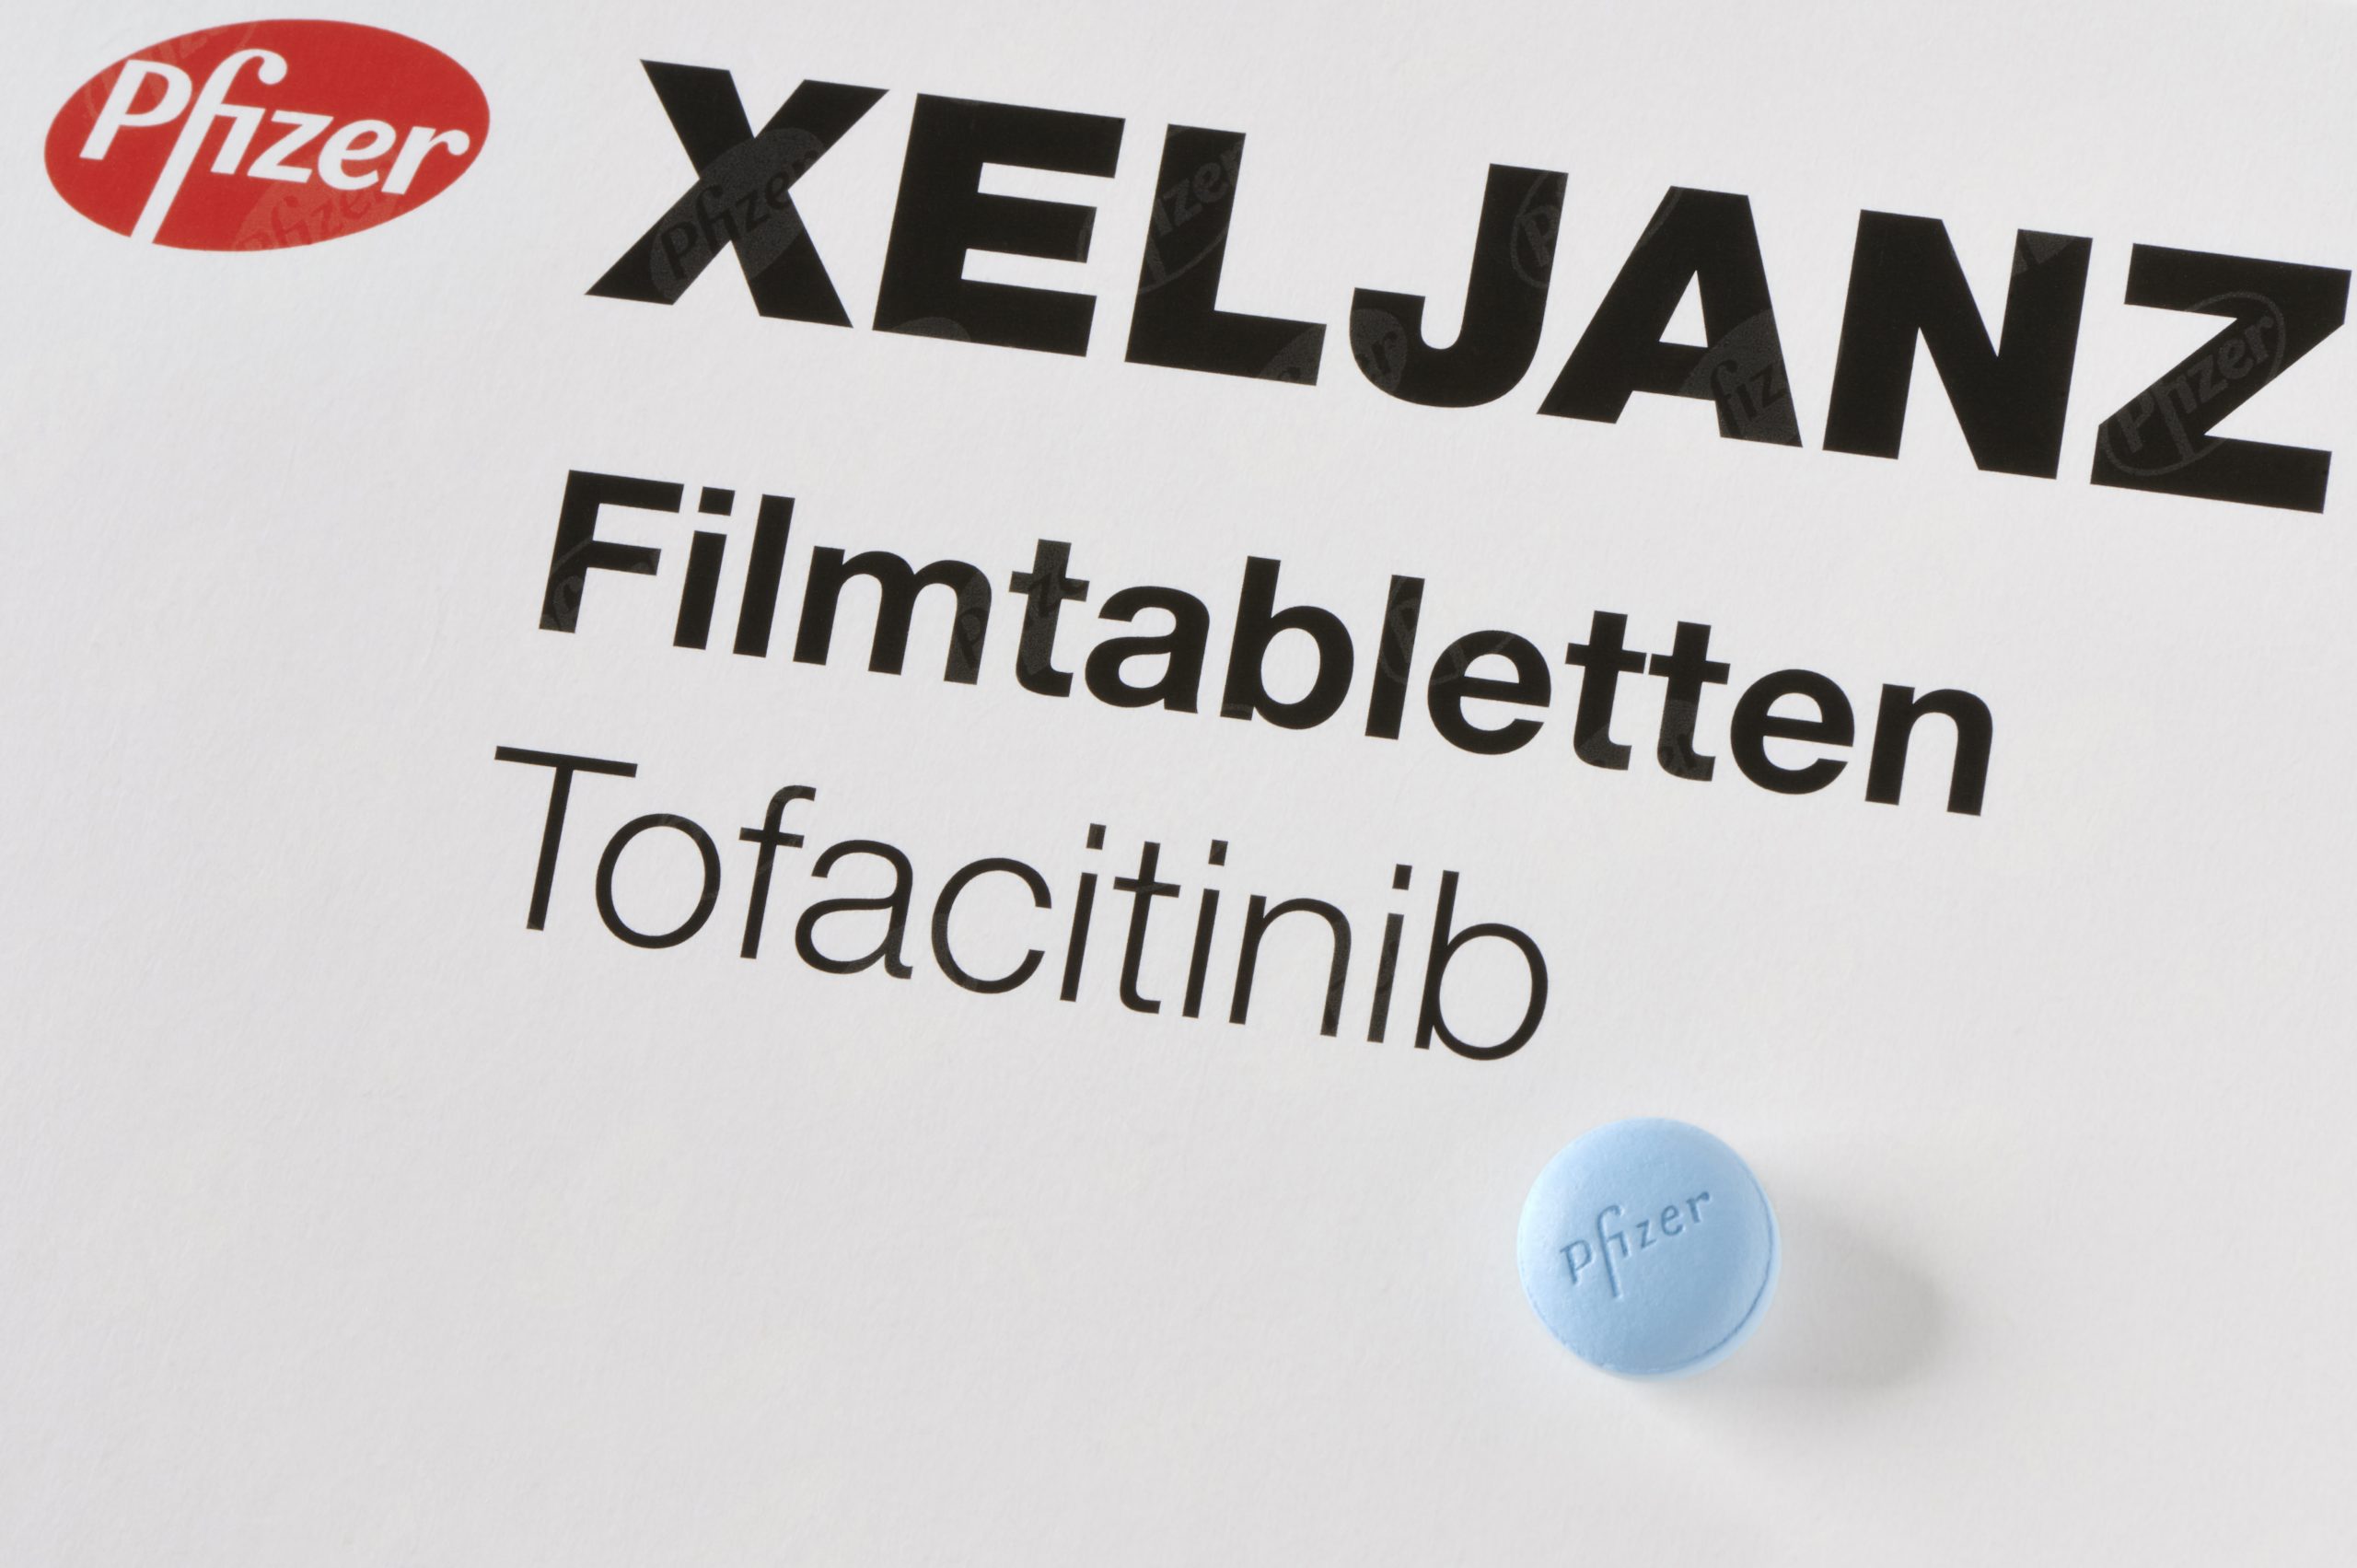 Tofacitinib Pfizer